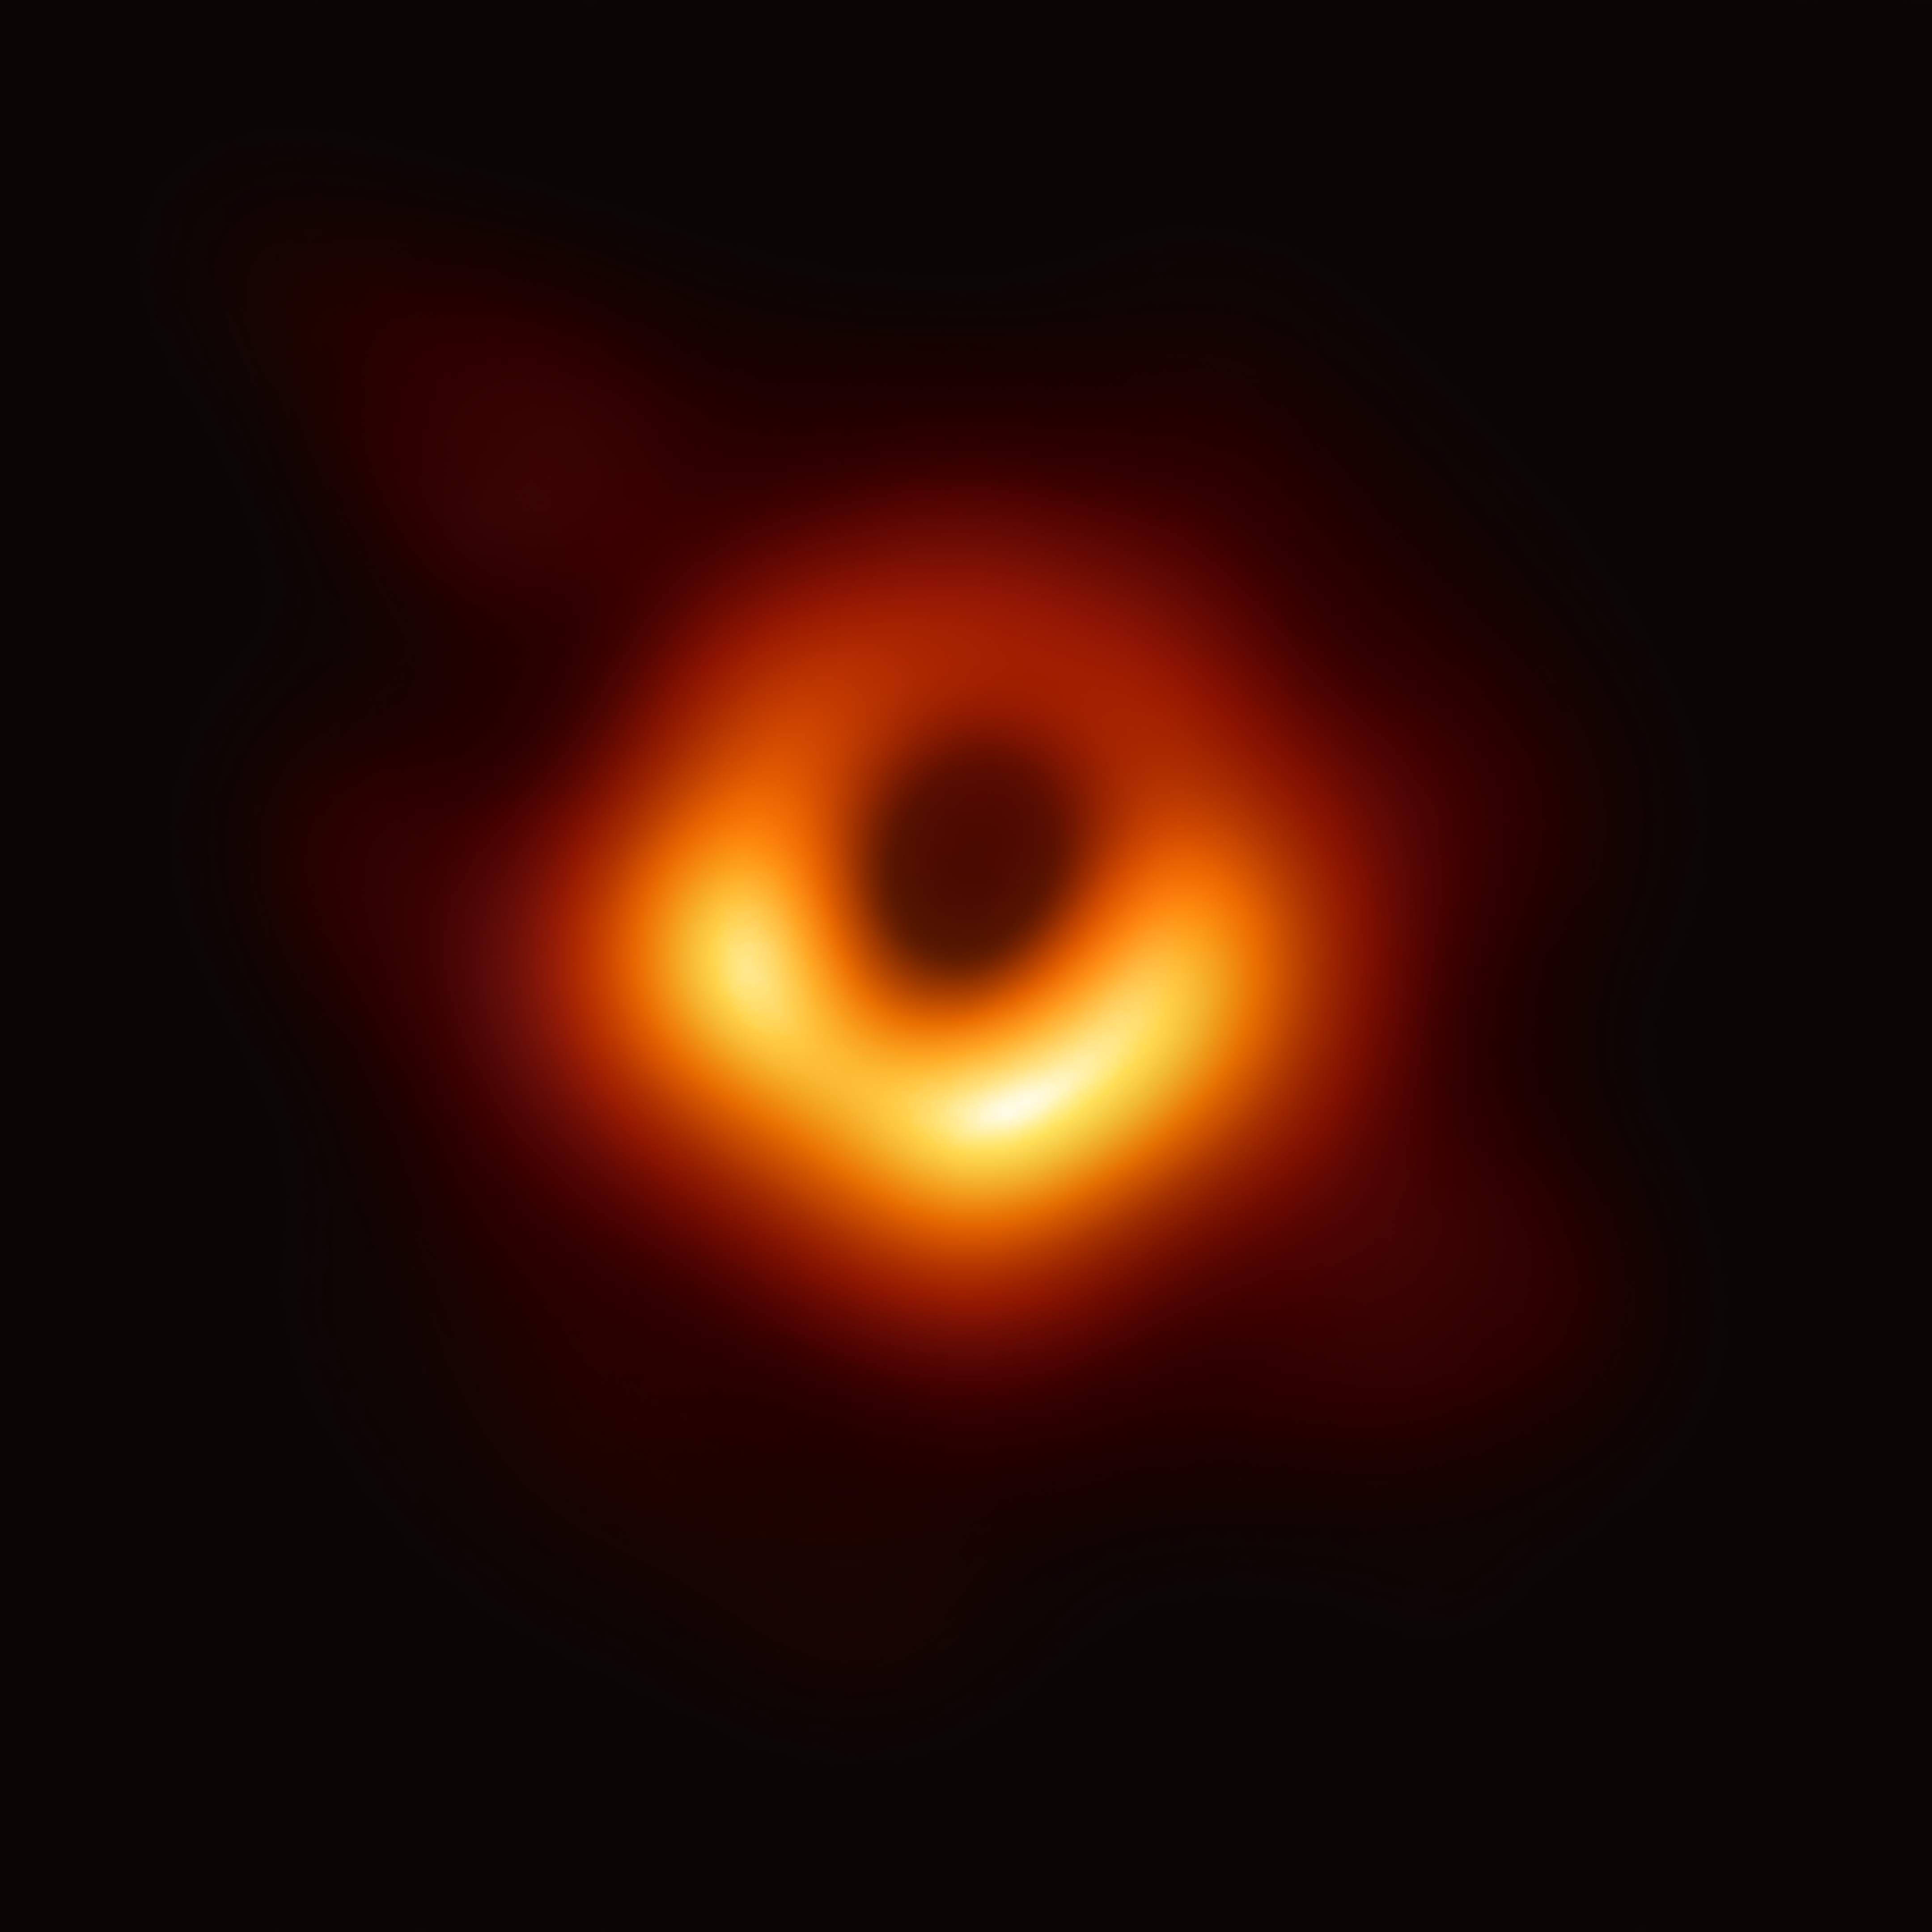 Der Schatten des Schwarzen Lochs M87* und die
     rotierende Gasscheibe, die unten auf uns zu kommt, und daher
     heller ist.
     (<a
     href='https://commons.wikimedia.org/w/index.php?curid=77925953'>NASA,
      ESO Article, ESO TIF, CC BY 4.0</a>)